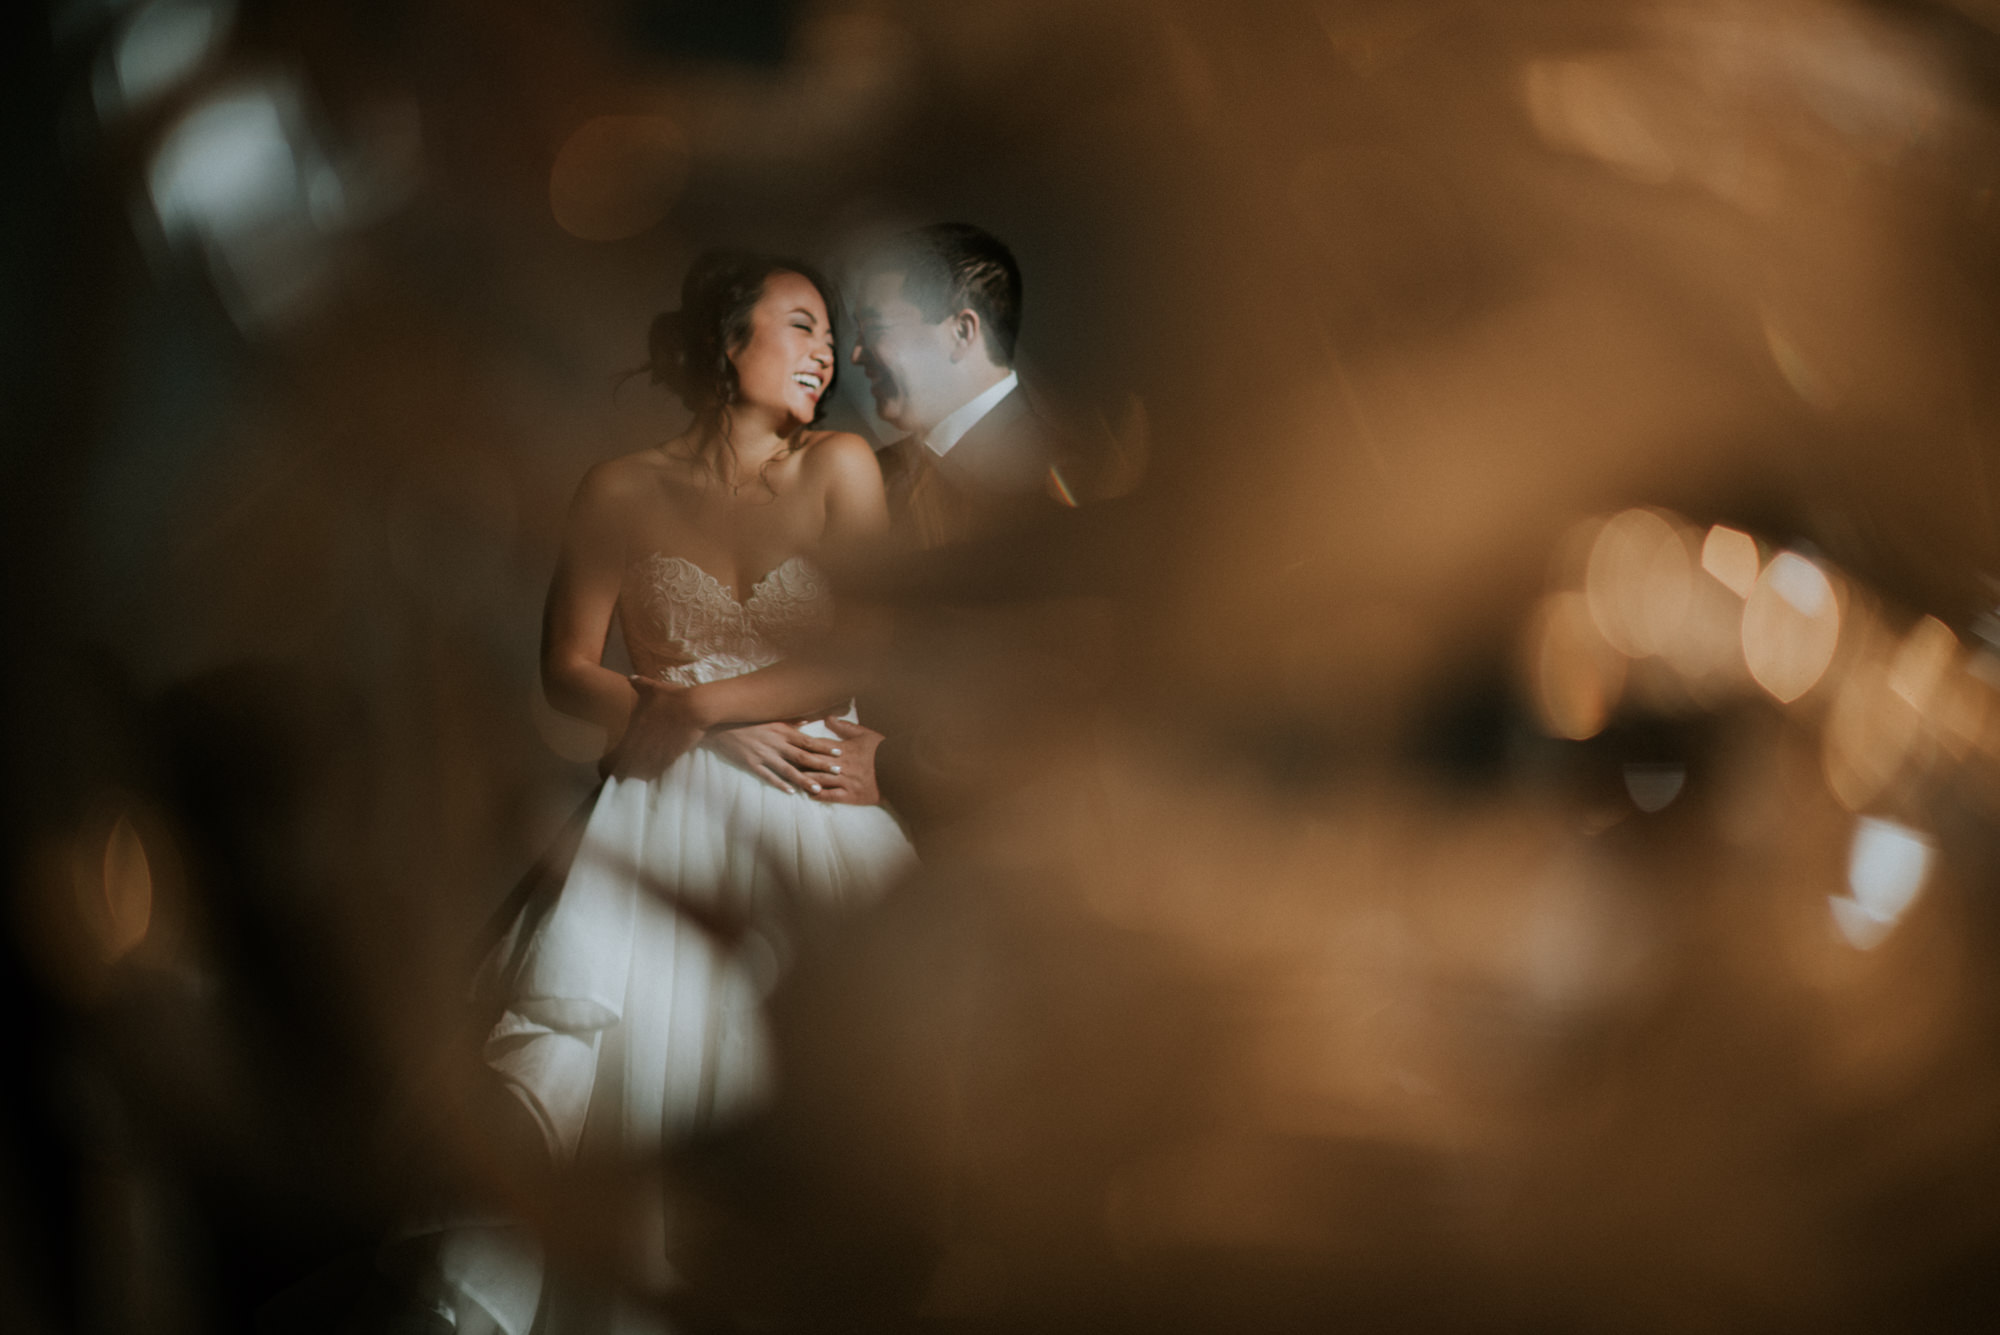 Amy and Jeremy wedding portraits at Chihuly Garden and Glass, Seattle WA, by Seattle Wedding Photographers Jennifer Tai